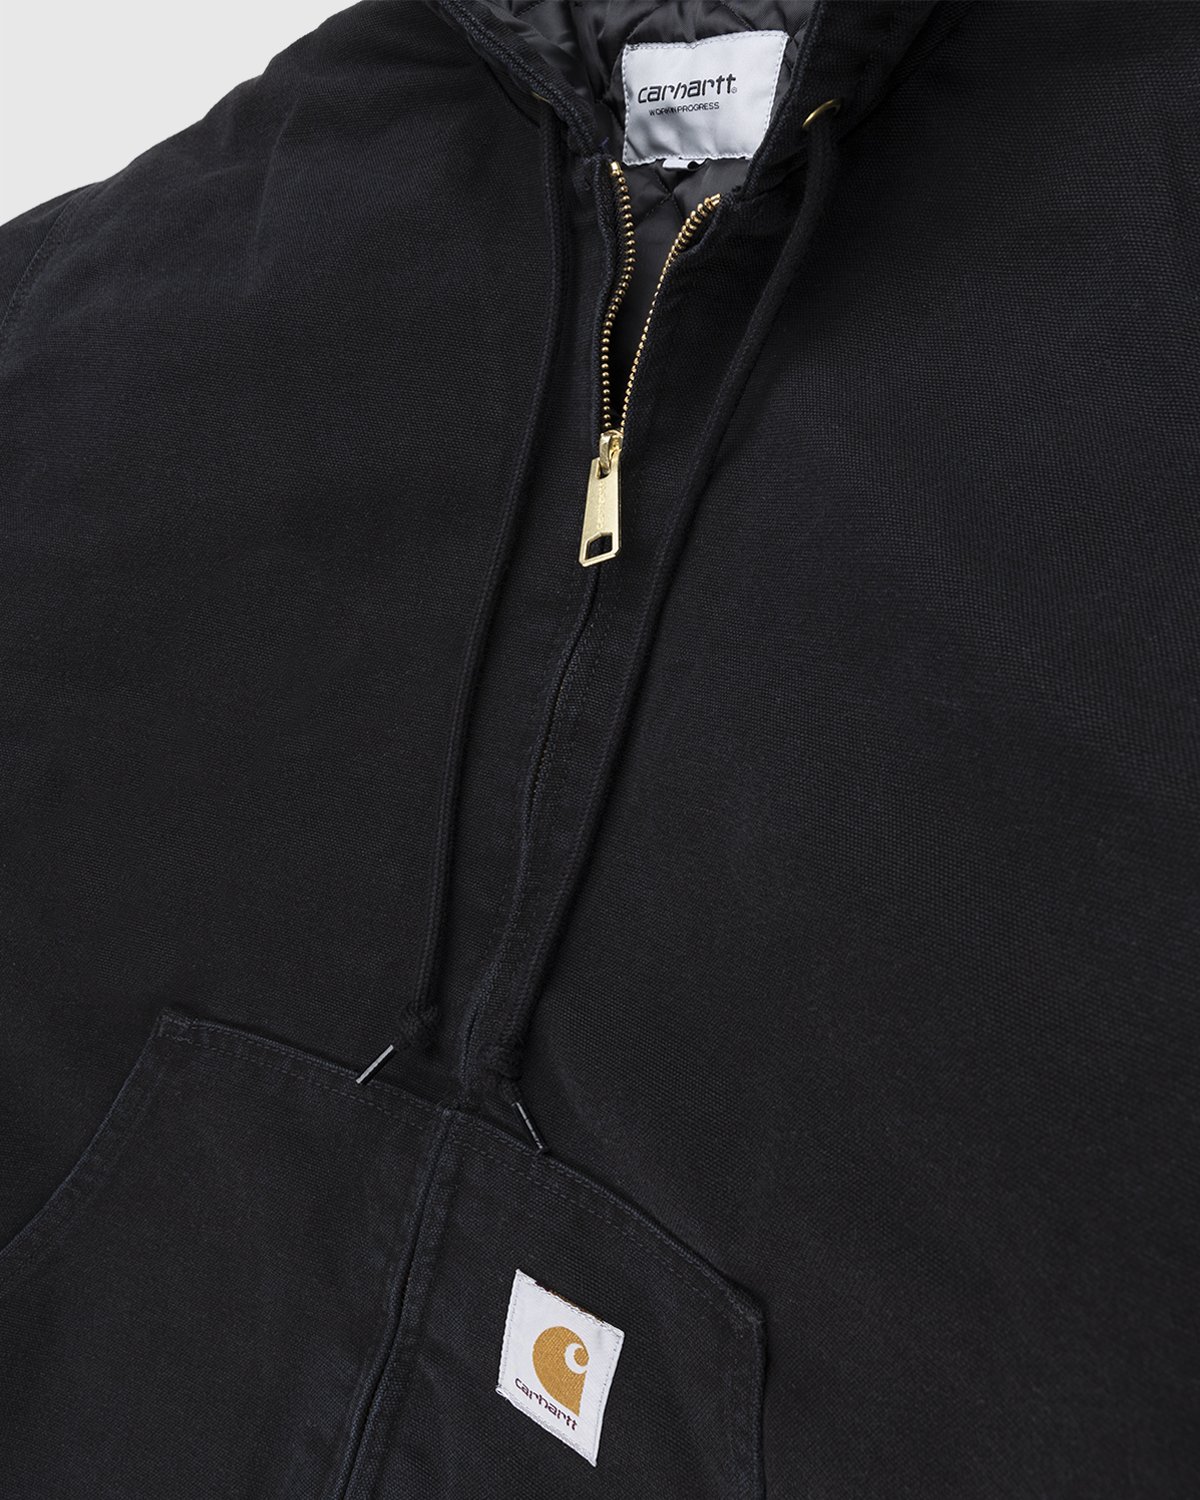 Carhartt WIP - OG Active Jacket Black - Clothing - Black - Image 4